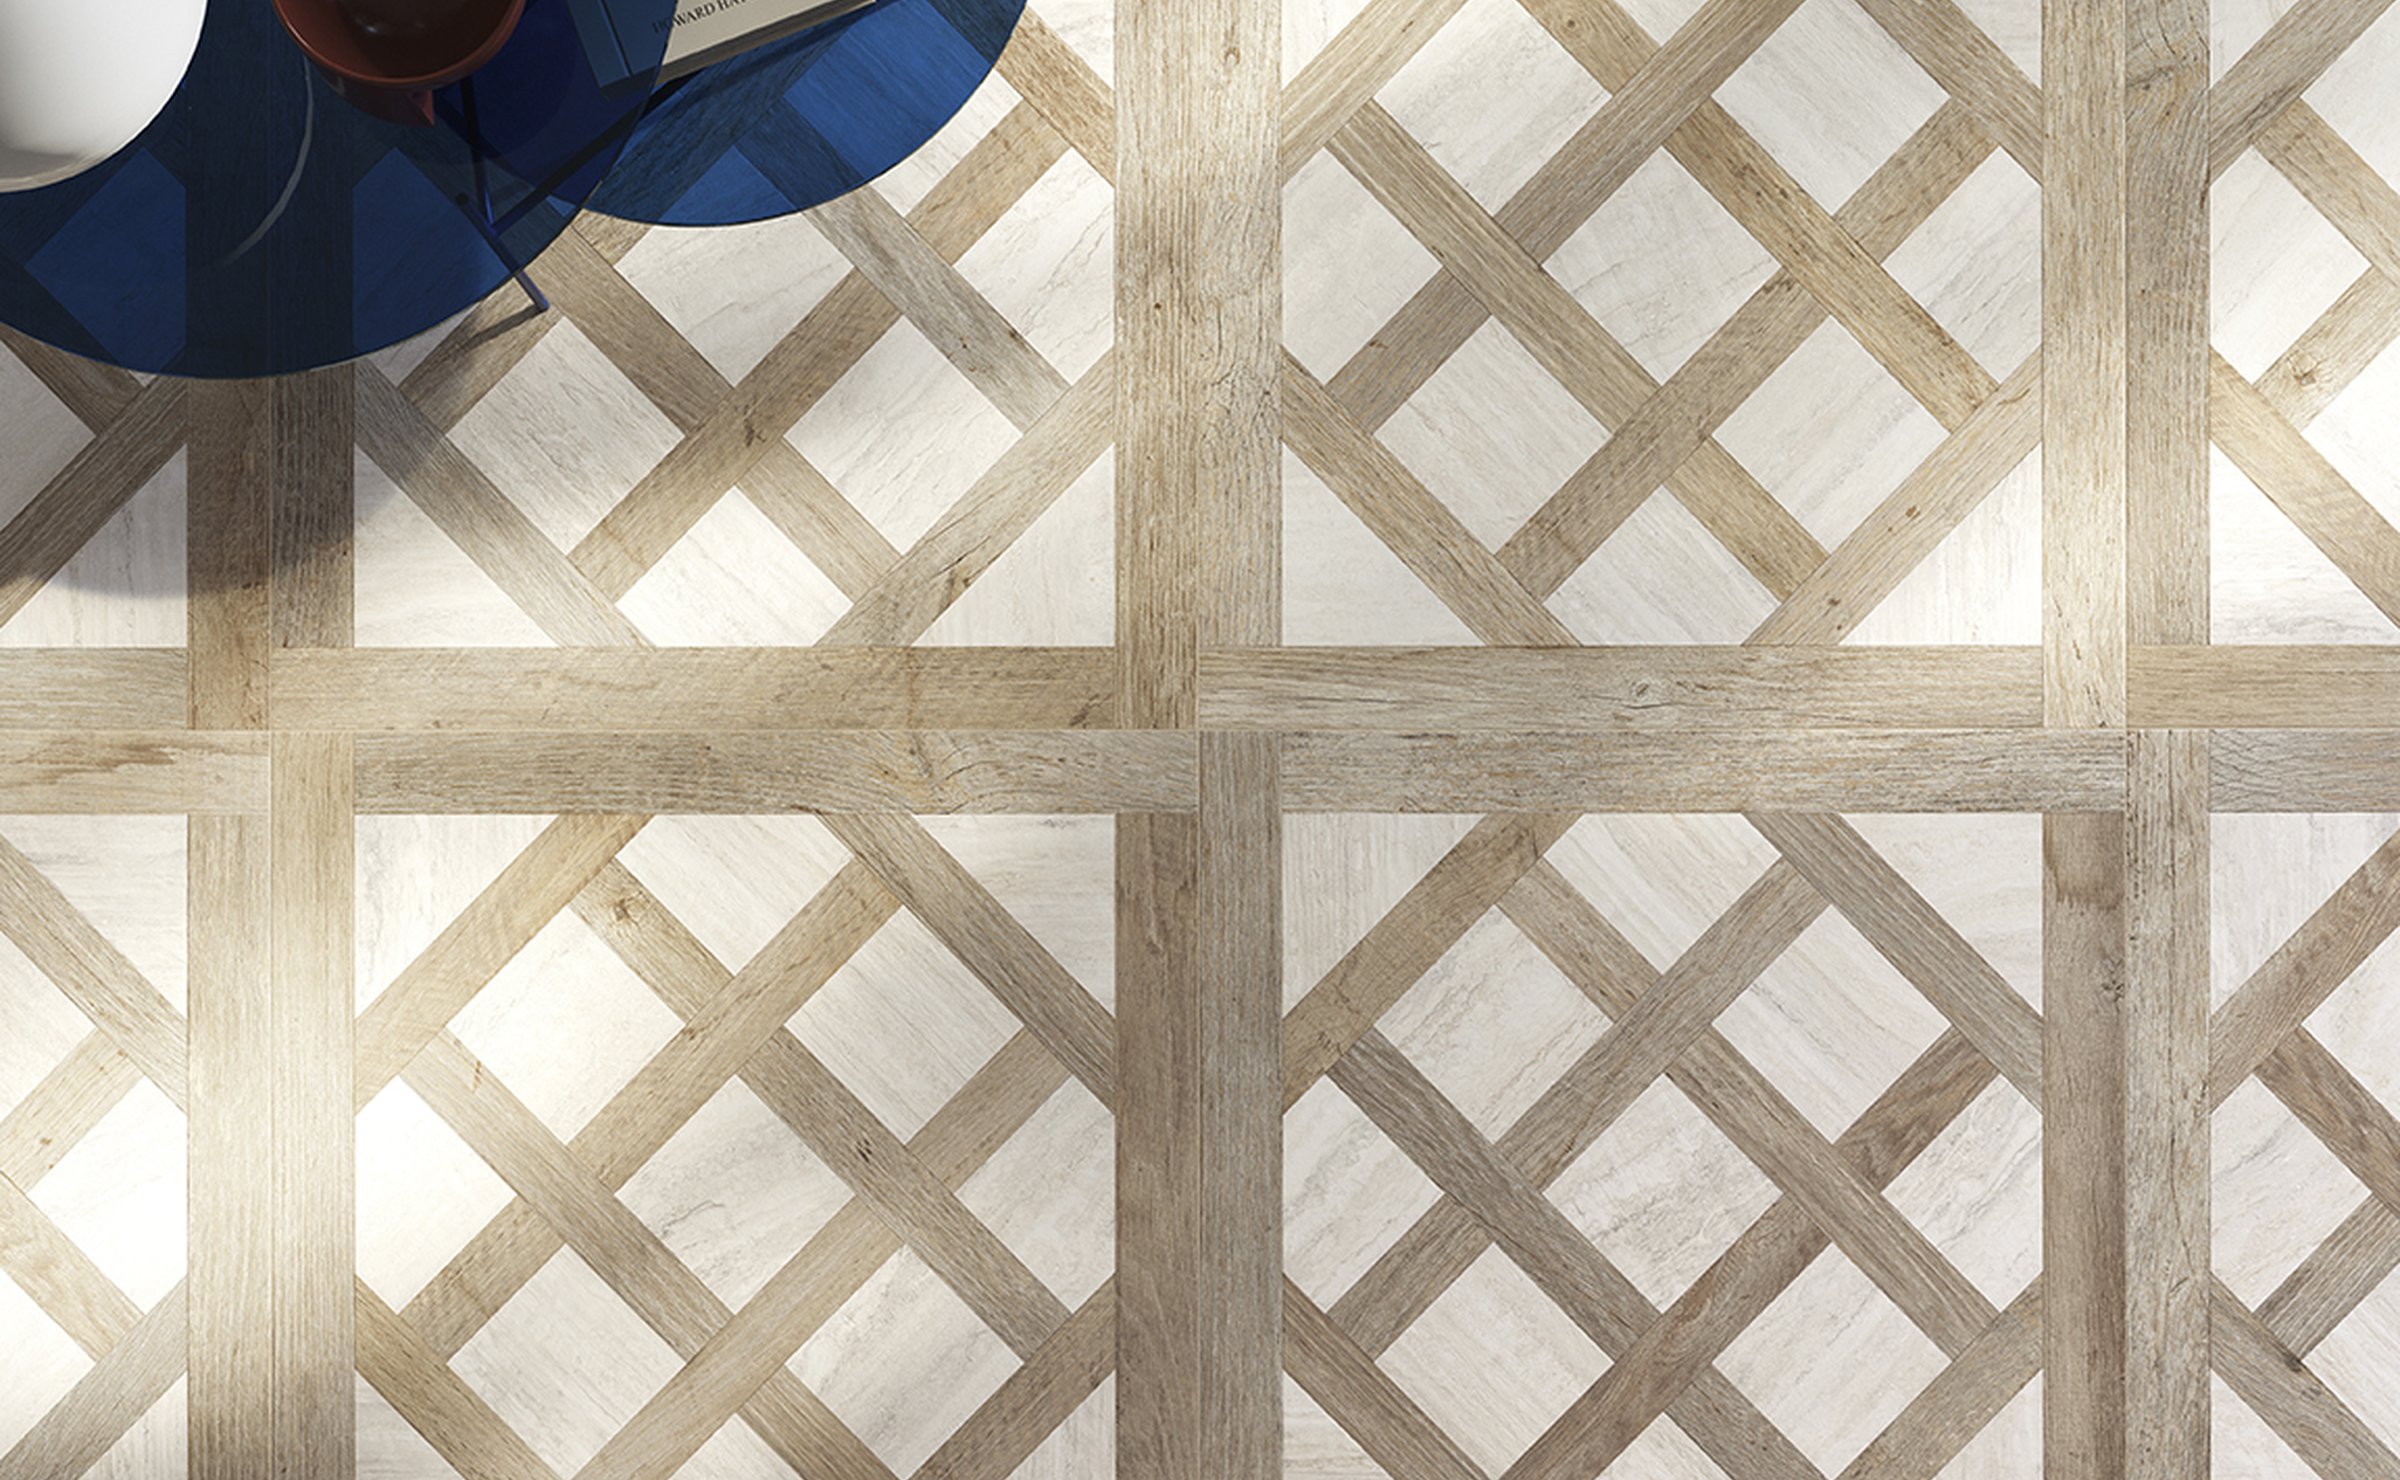 Yorkwood: wood effect tiles